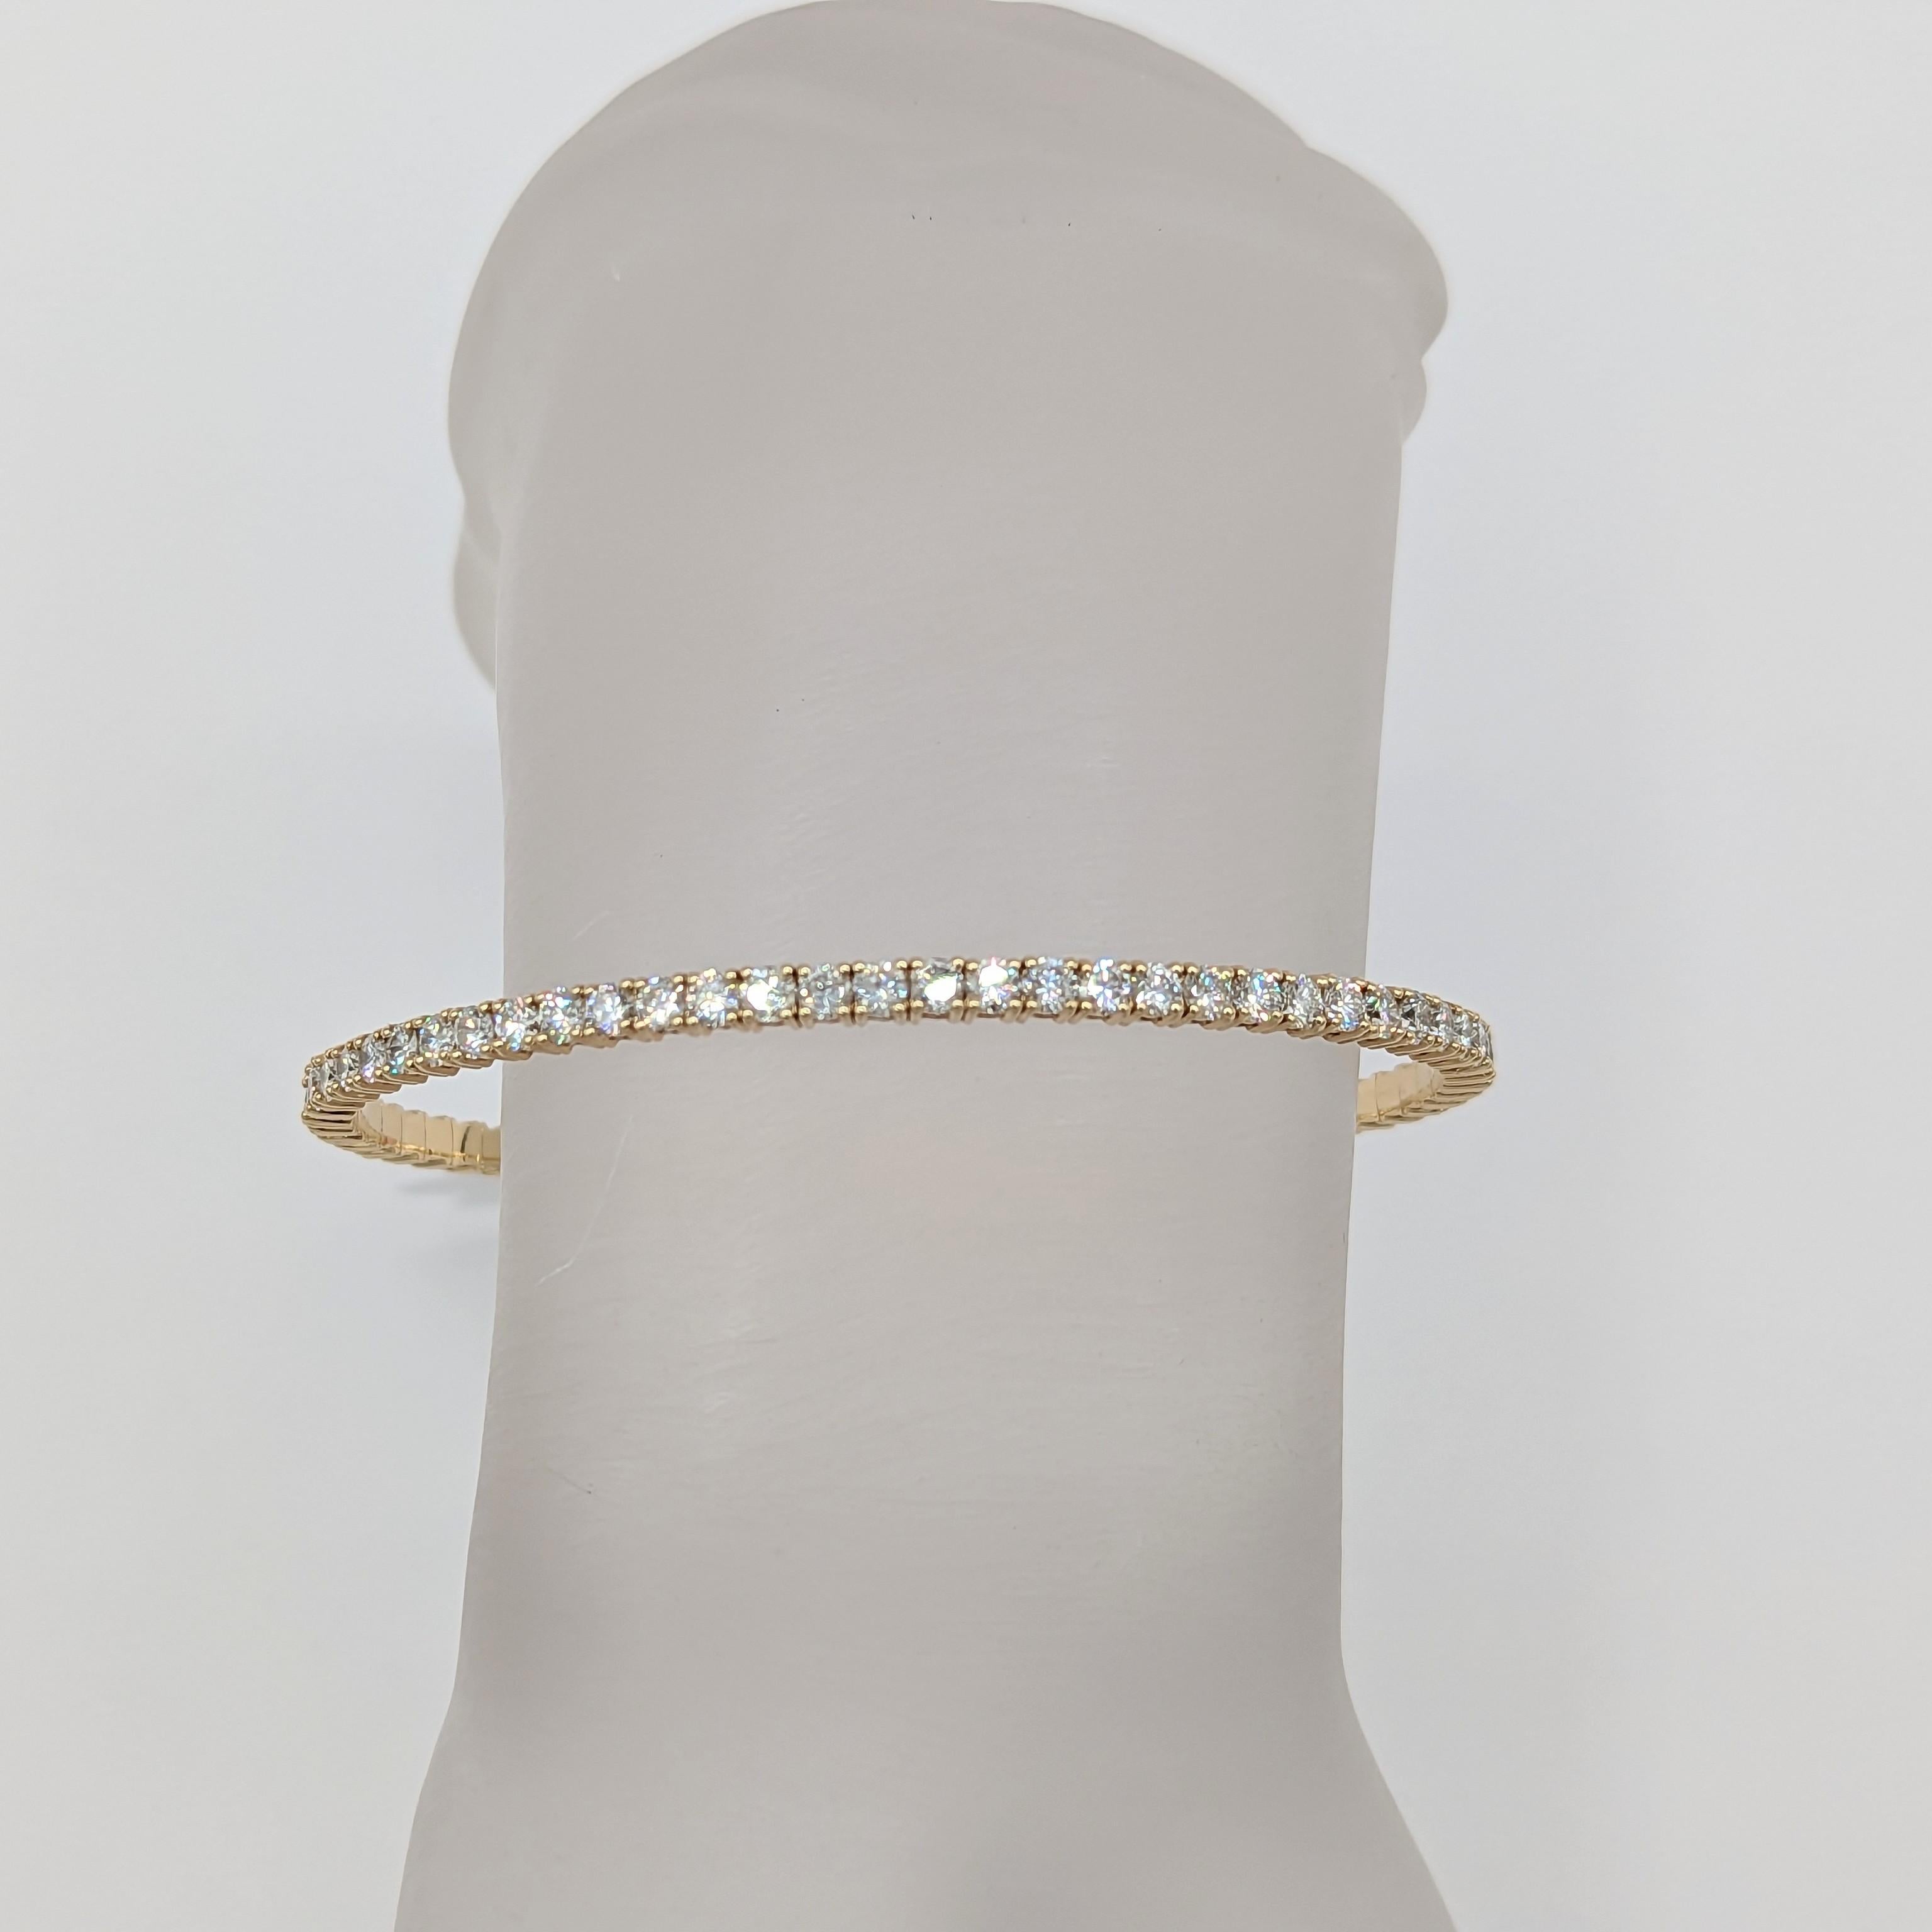 Magnifique diamant blanc rond de 5.05 ct.  Fabriqué à la main en or jaune 14k.  Ce bracelet est unique parce qu'il est flexible, ce qui le rend plus confortable à porter.  